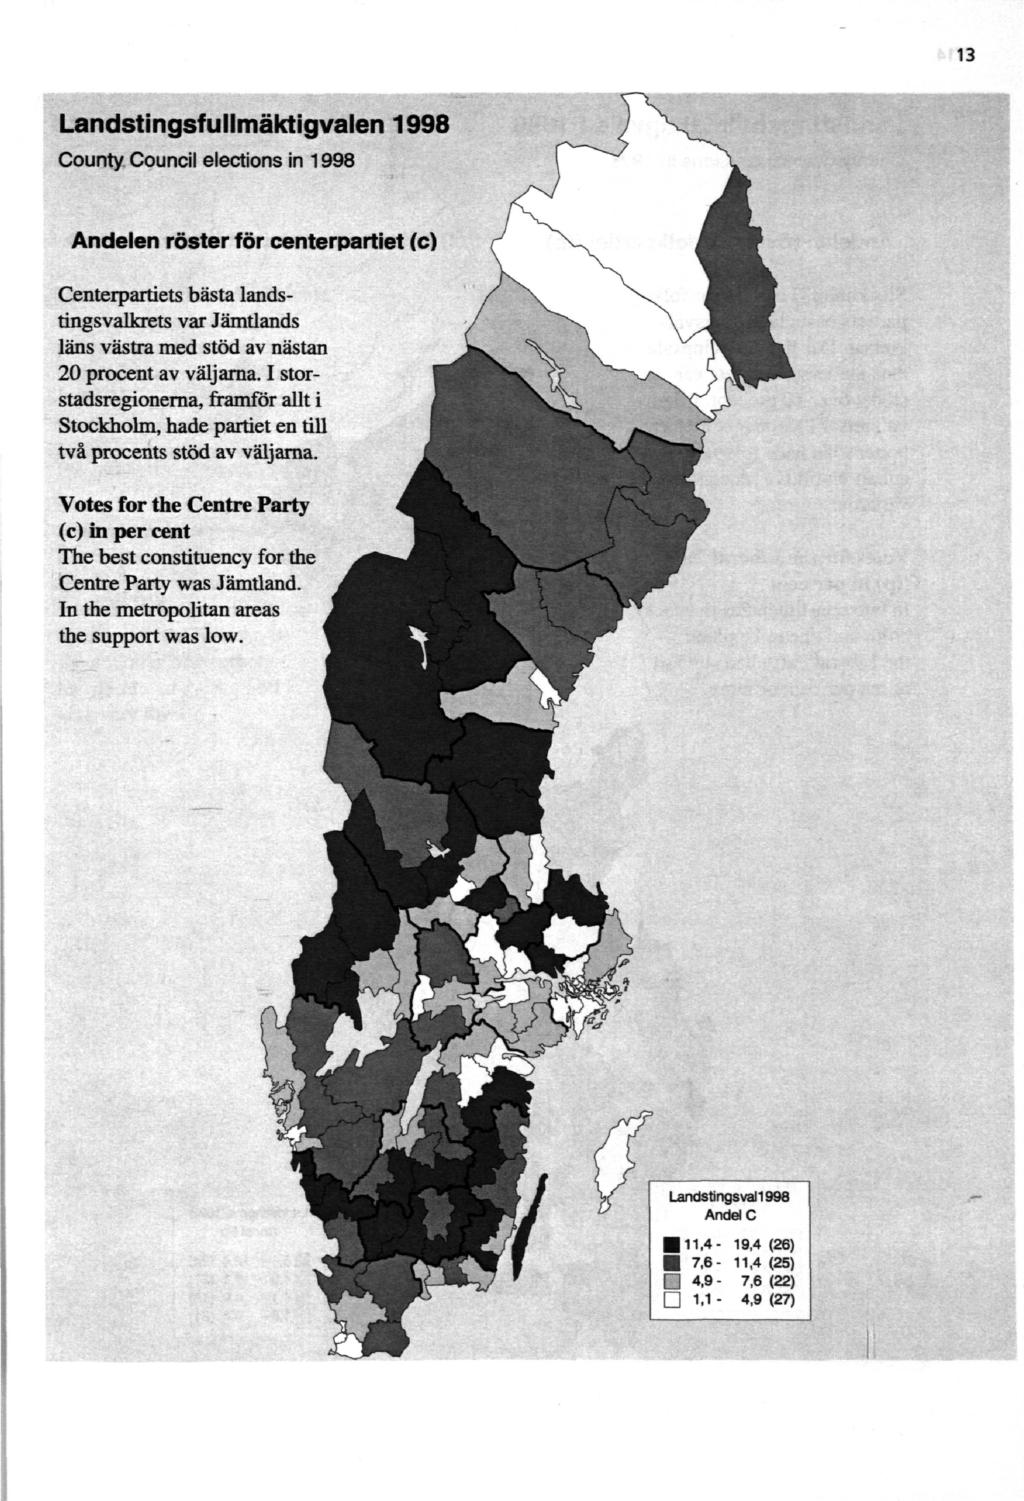 13 Landstingsfullmäktigvalen 1998 County Council elections in 1998 Andelen röster för centerpartiet (c) Centerpartiets bästa landstingsvalkrets var Jämtlands läns västra med stöd av nästan 20 procent